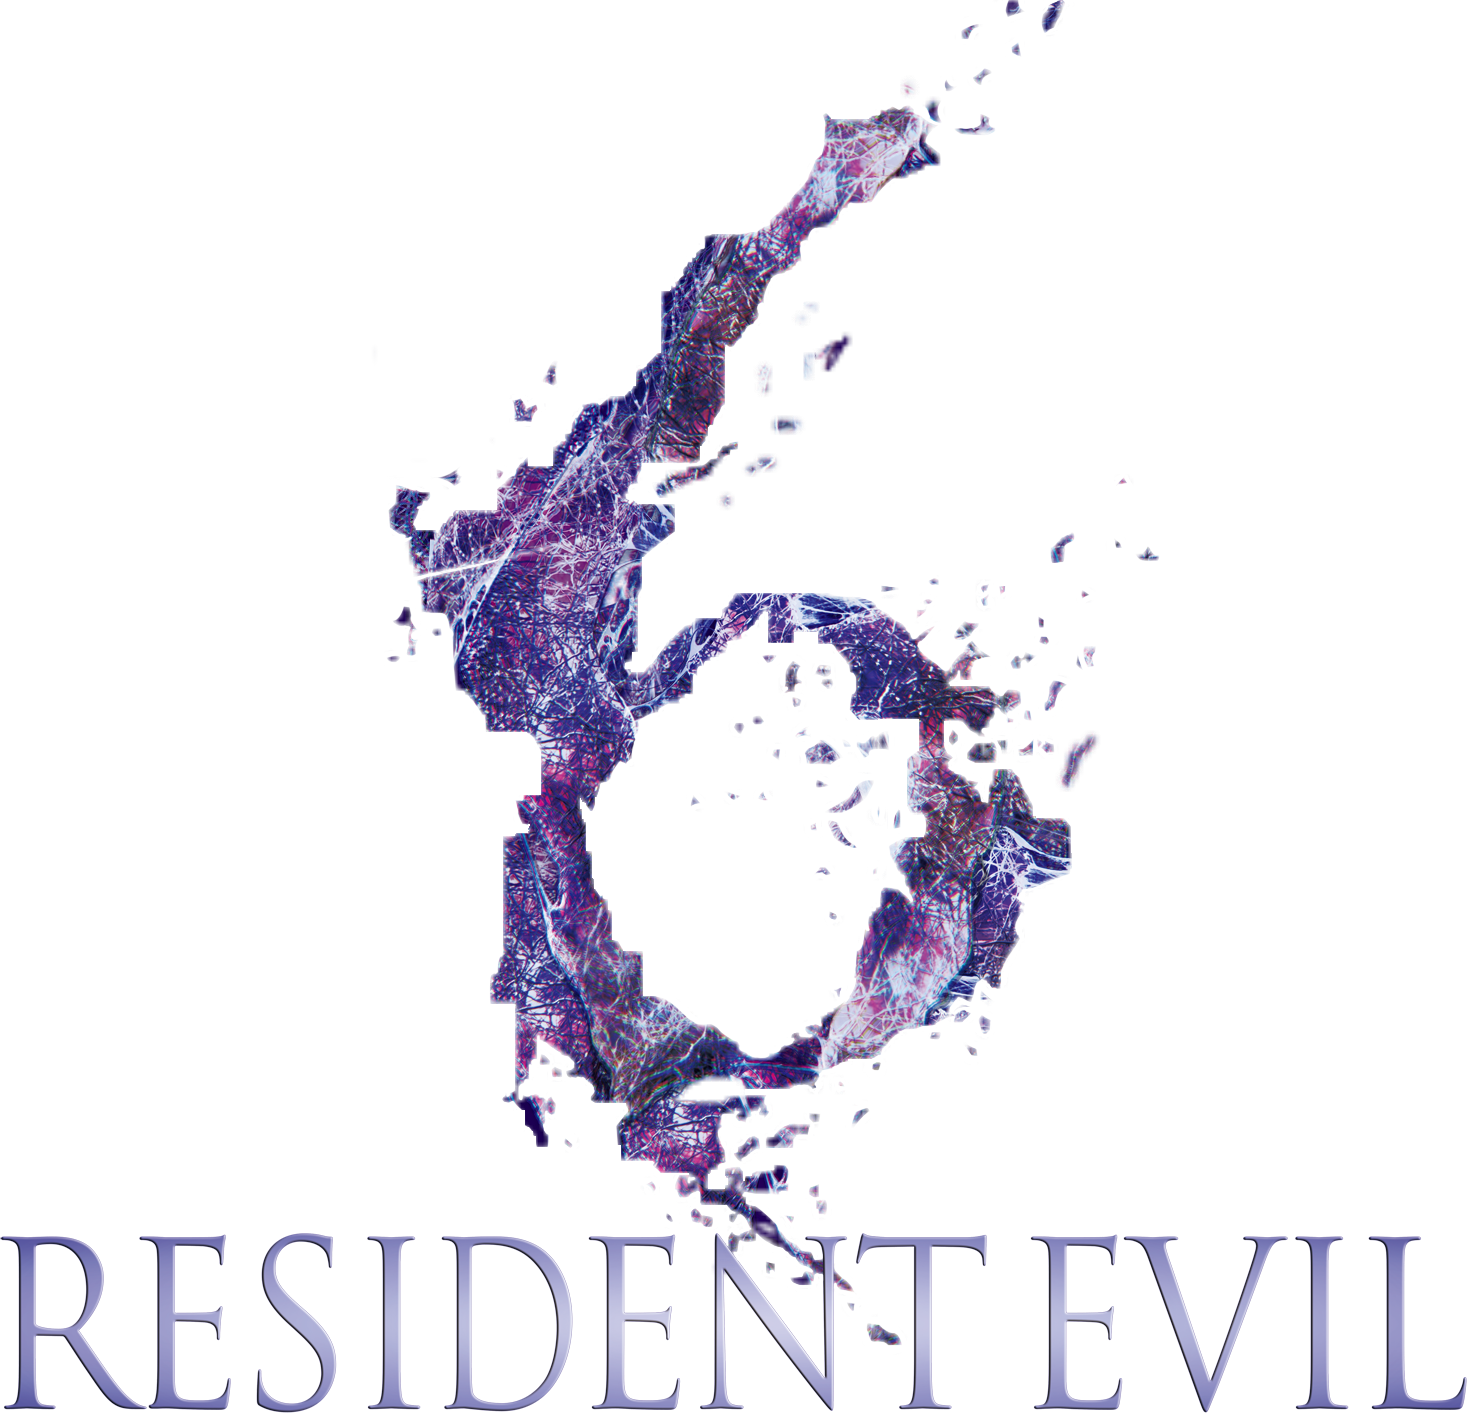 resident evil 6 logo png